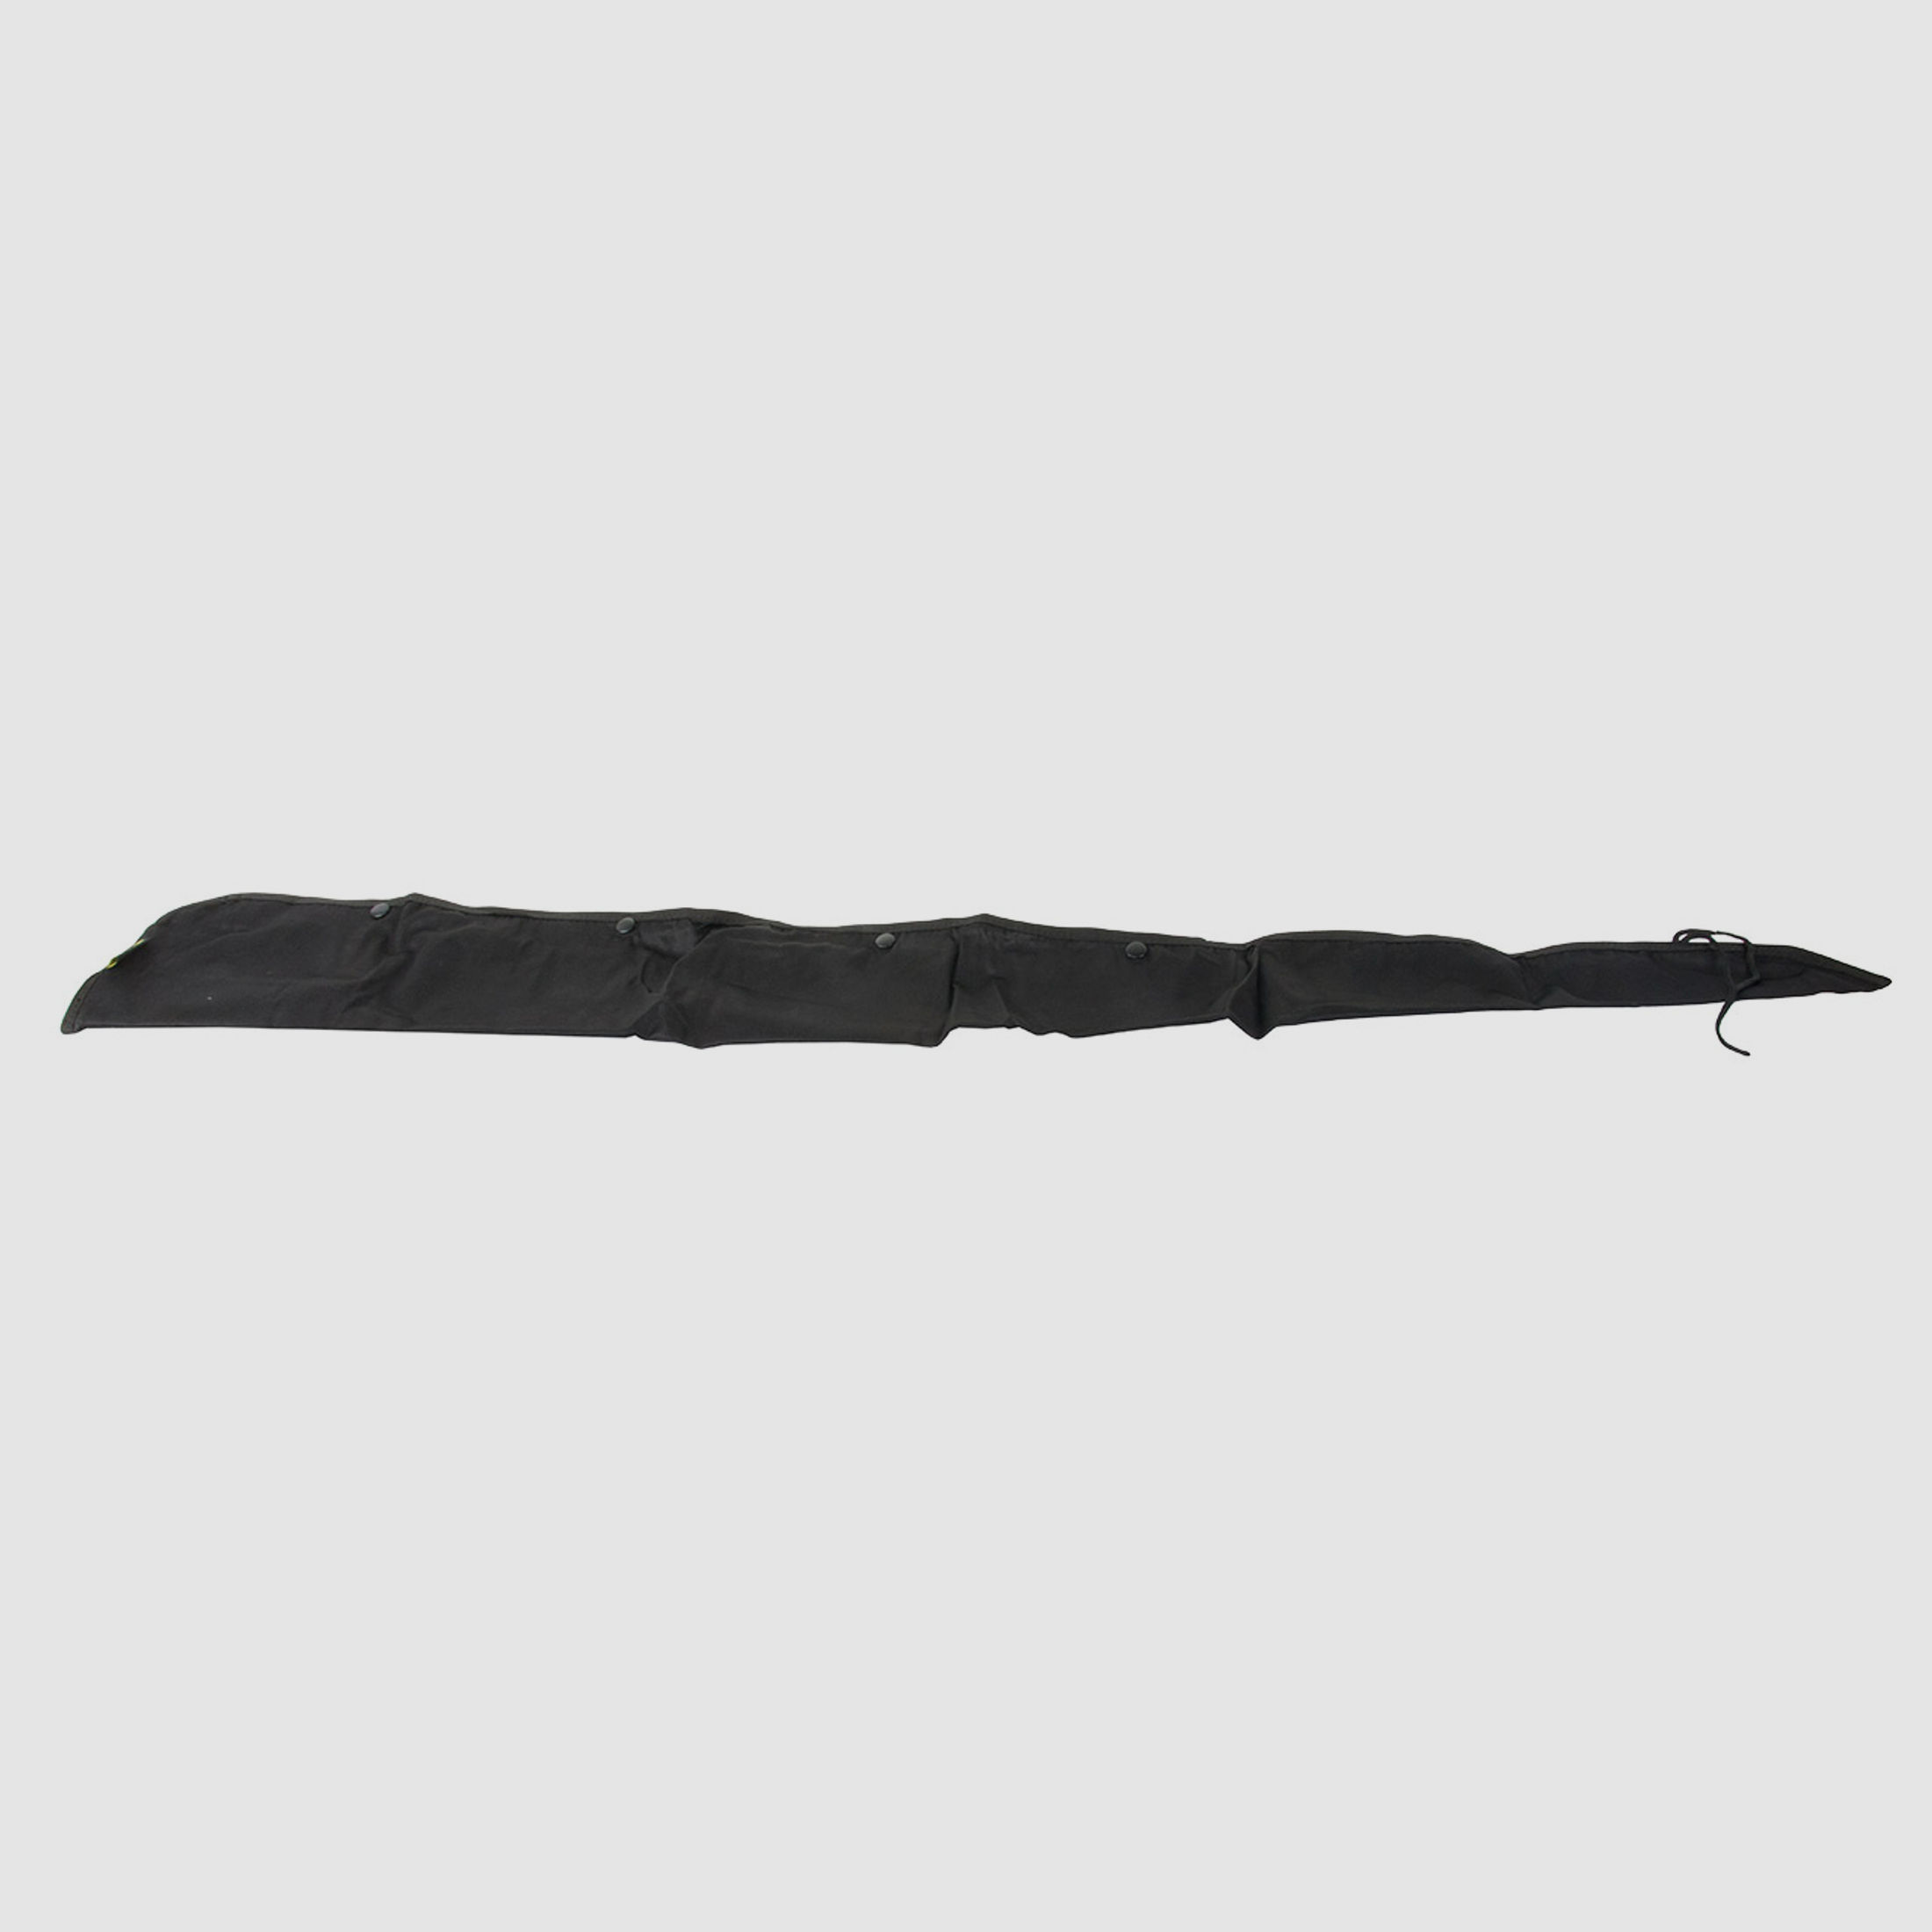 Gewehrfutteral Gewehrtasche Gewehrsack Waffenstrumpf Coptex LĂ¤nge 120 cm Polyester schwarz